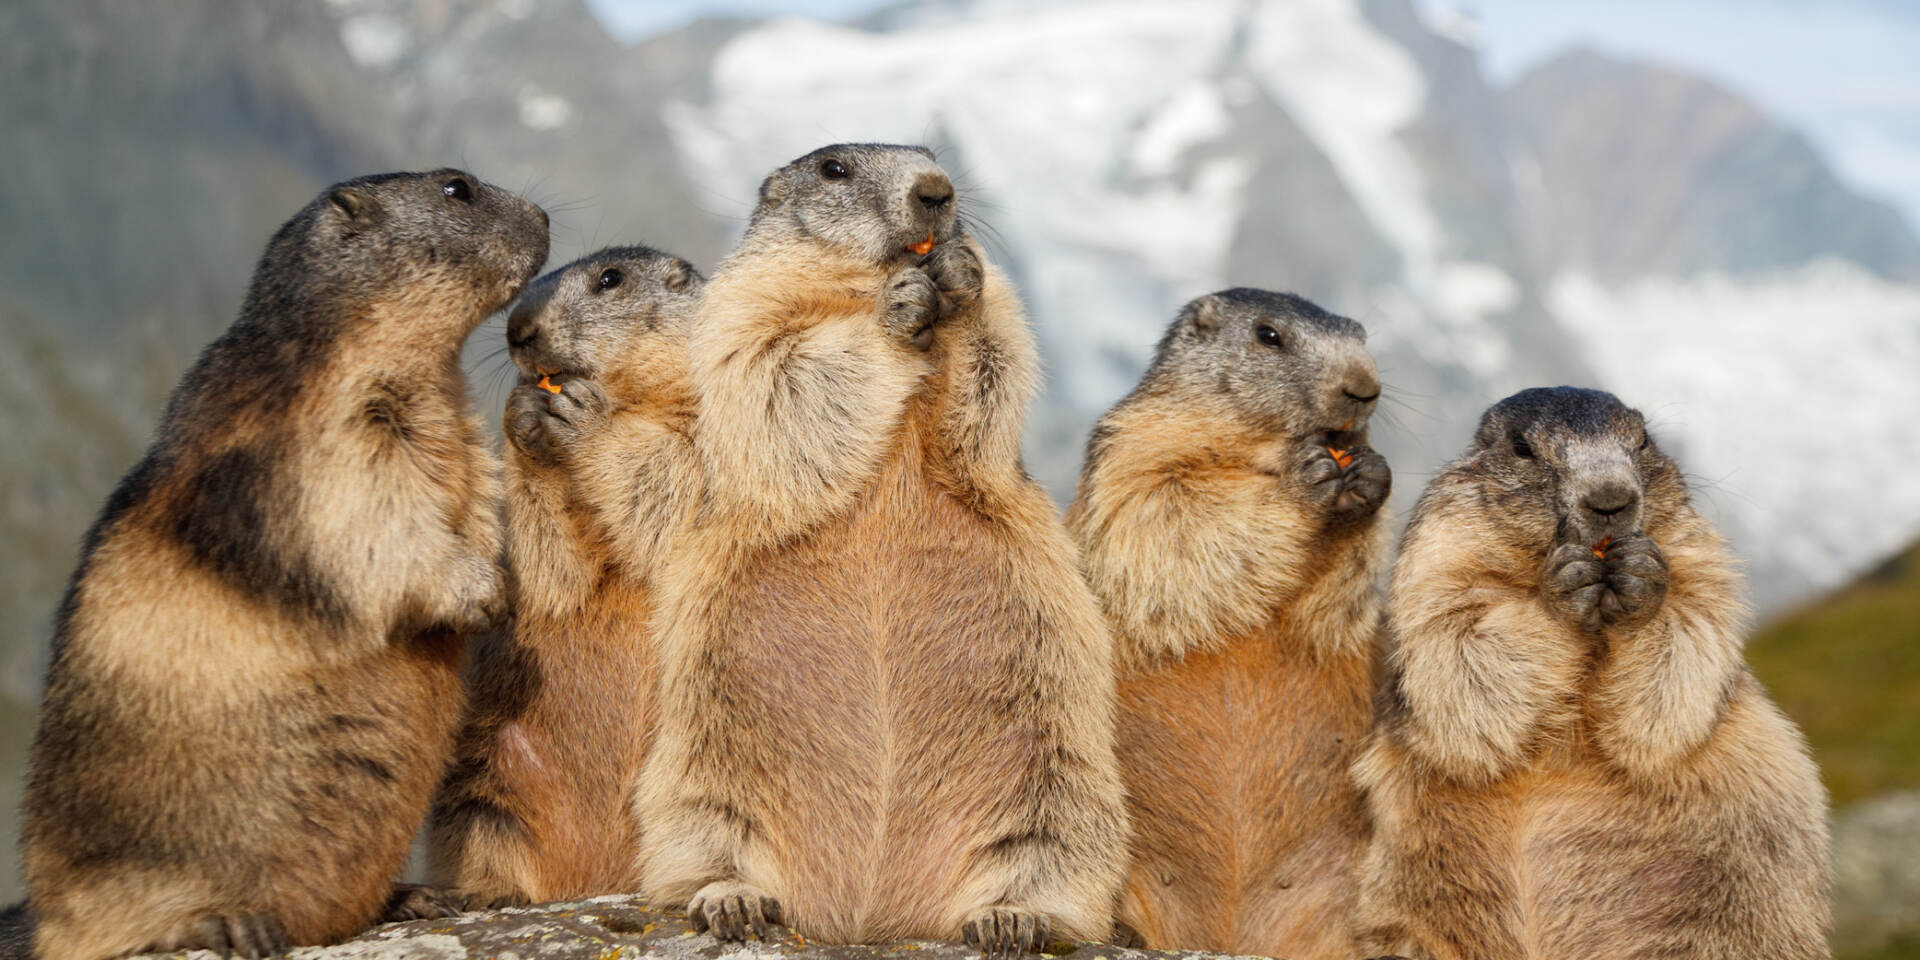 Grossglockner High Alpine Road - marmots © grossglockner.at